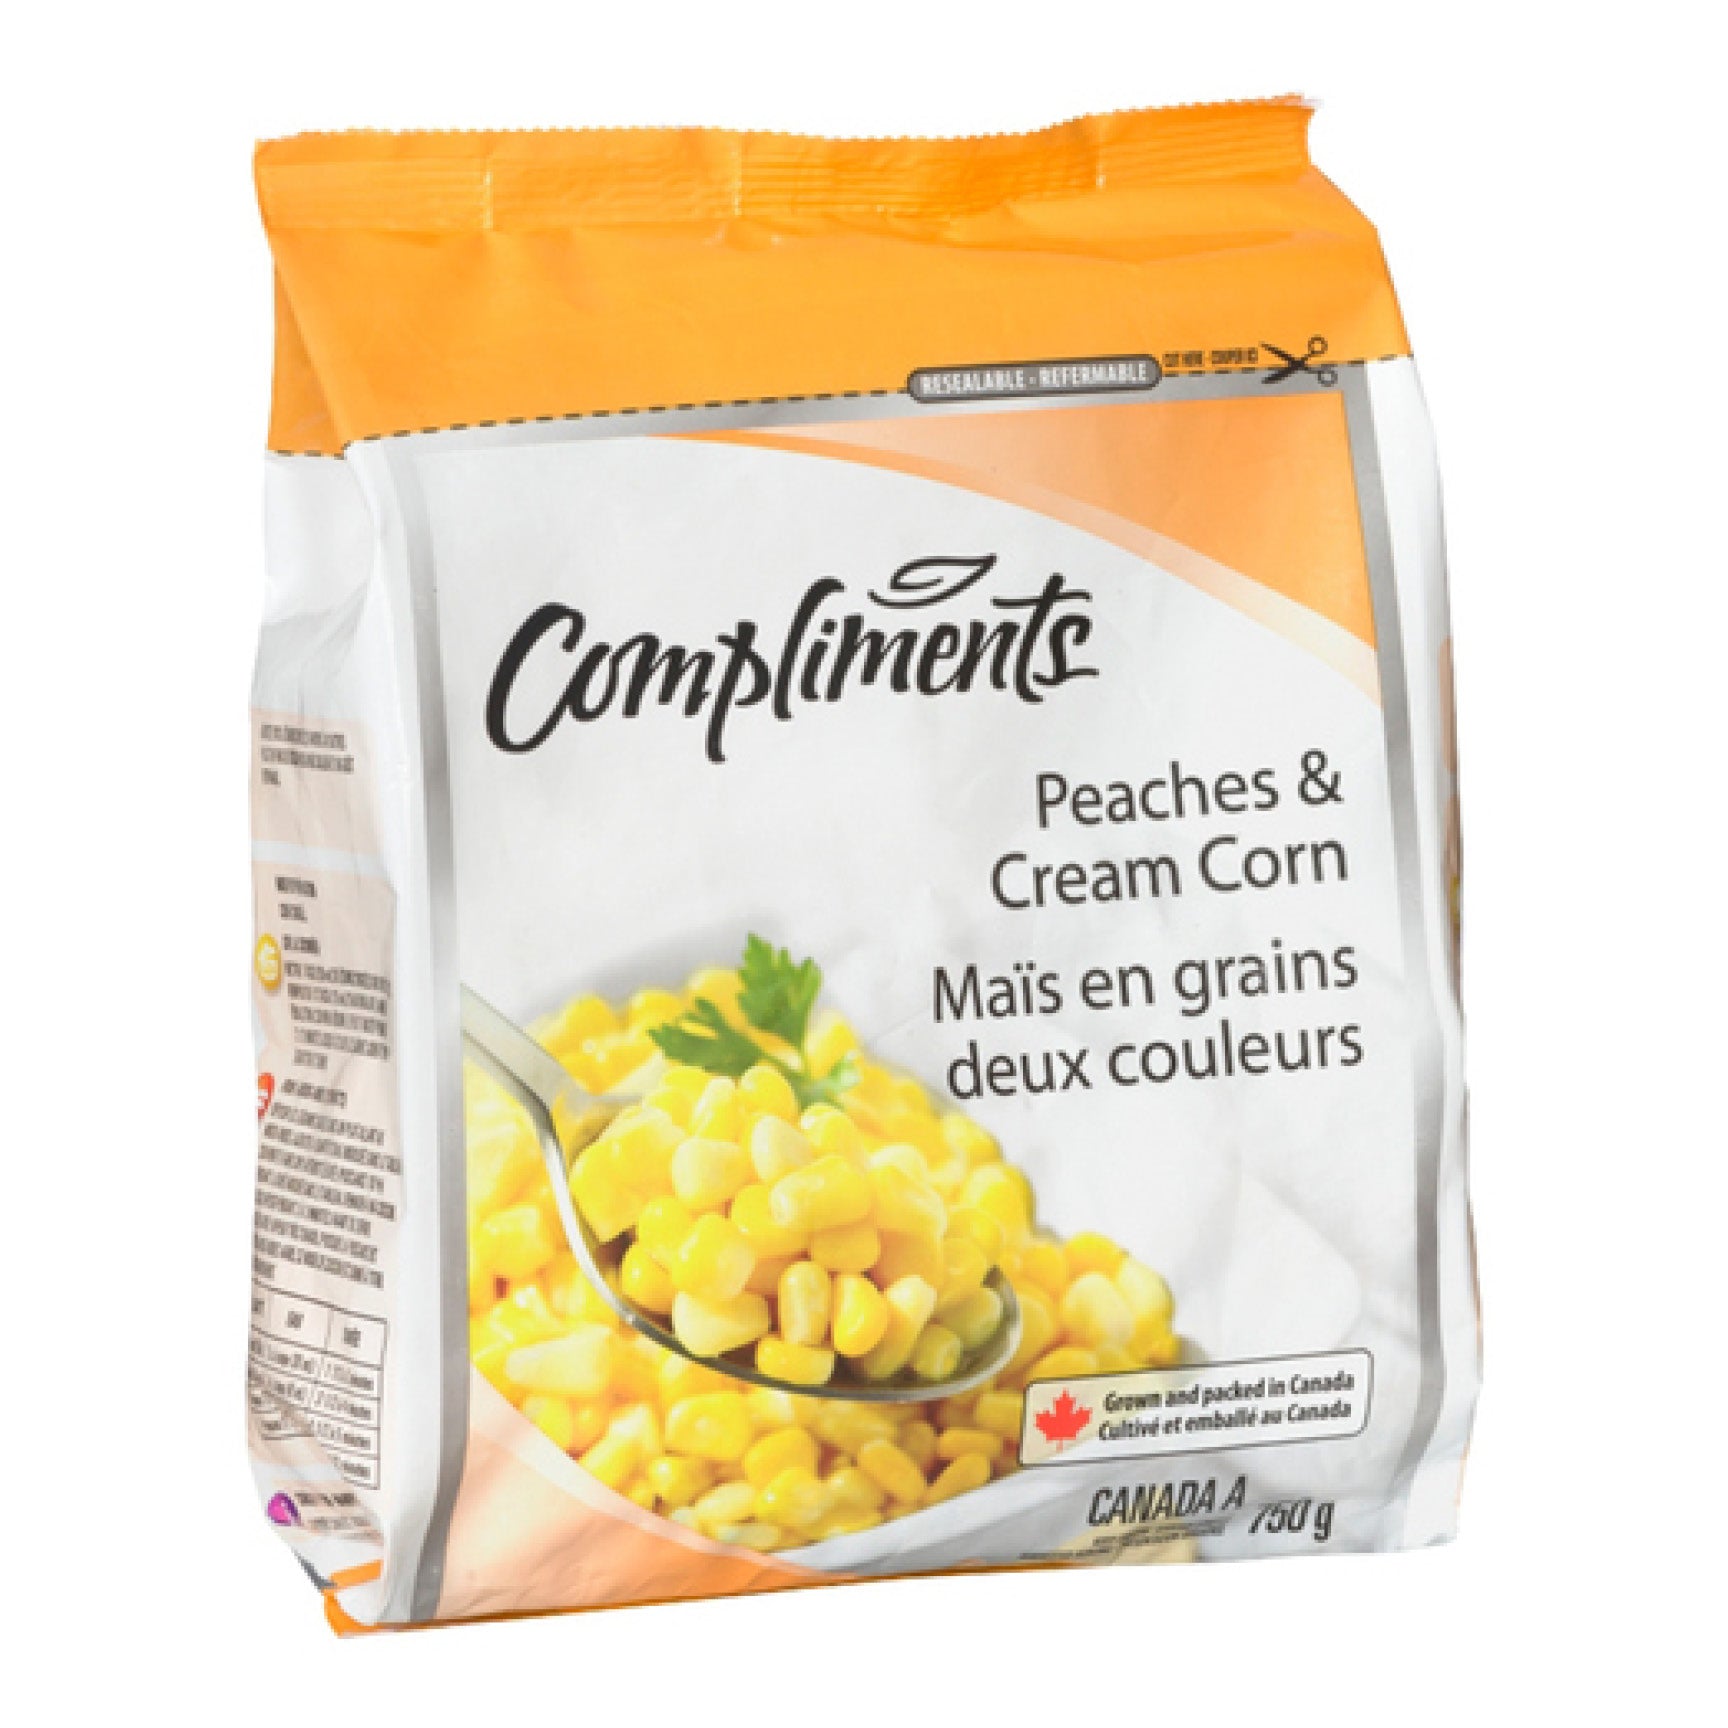 Compliments Frozen Peaches & Cream Corn, 750g